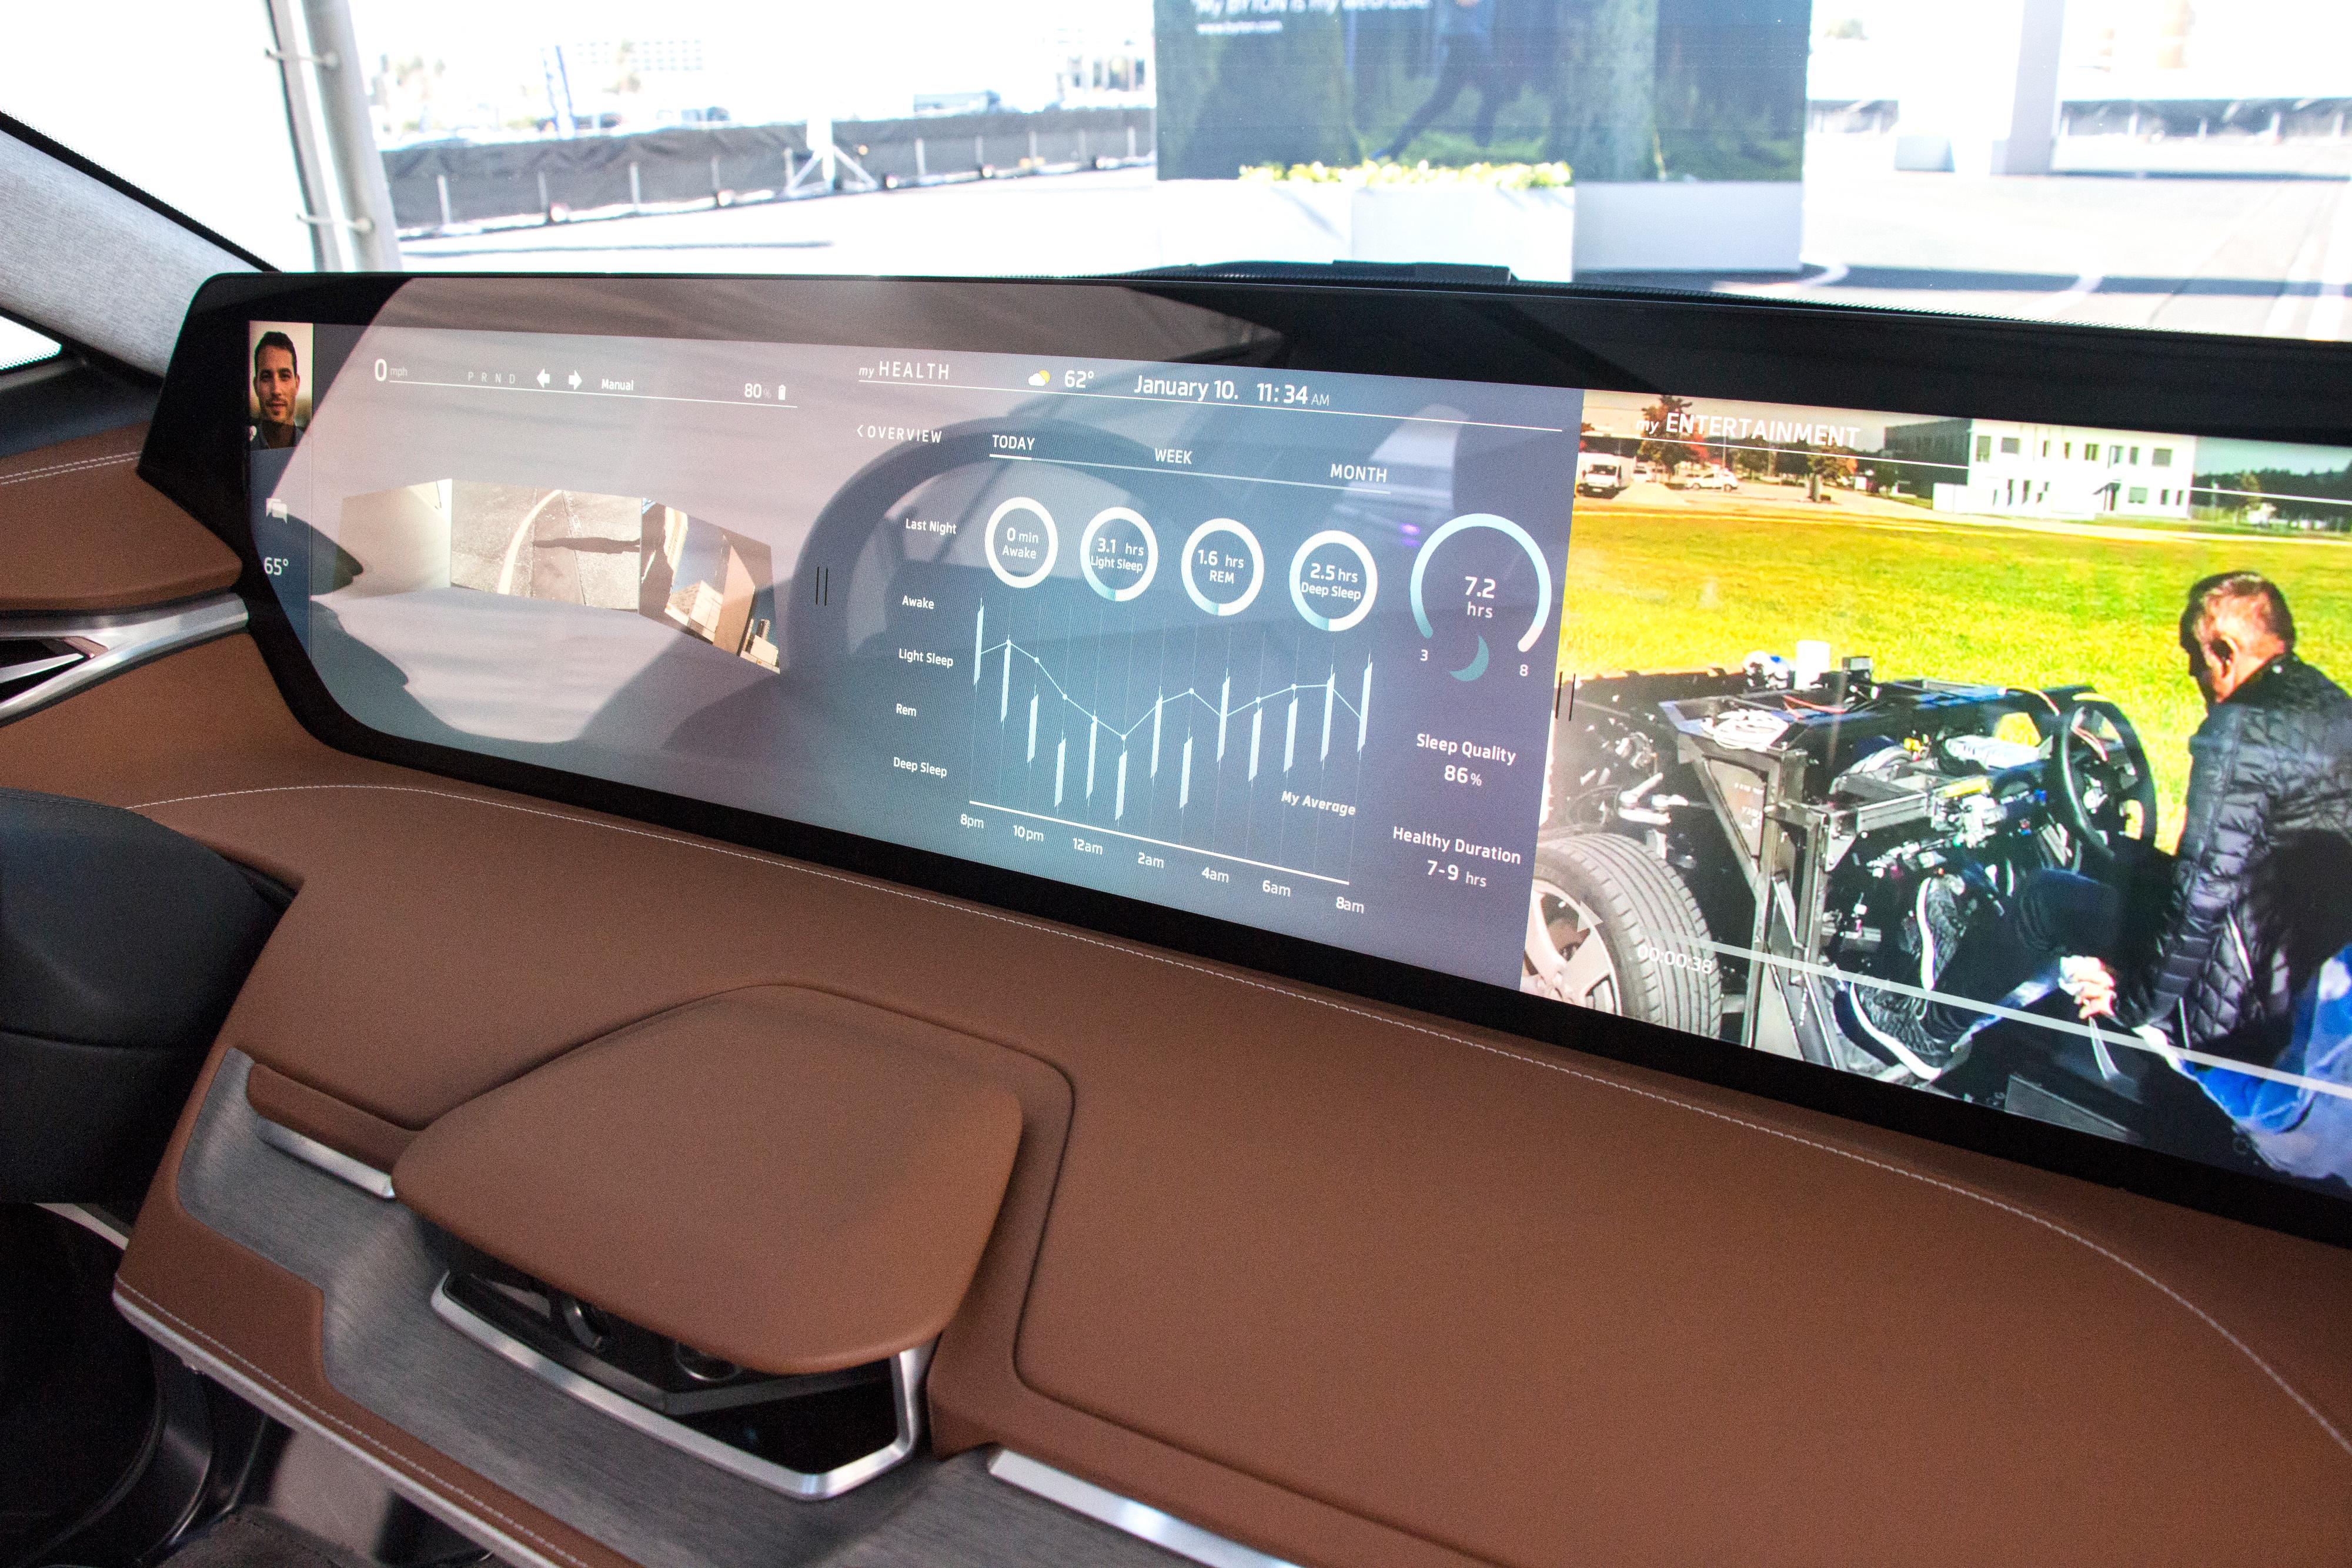 Den 48 tommer store skjermen foran er bare ett av elementene i måten Byton vil forandre hvordan vi interagerer med bilen på.